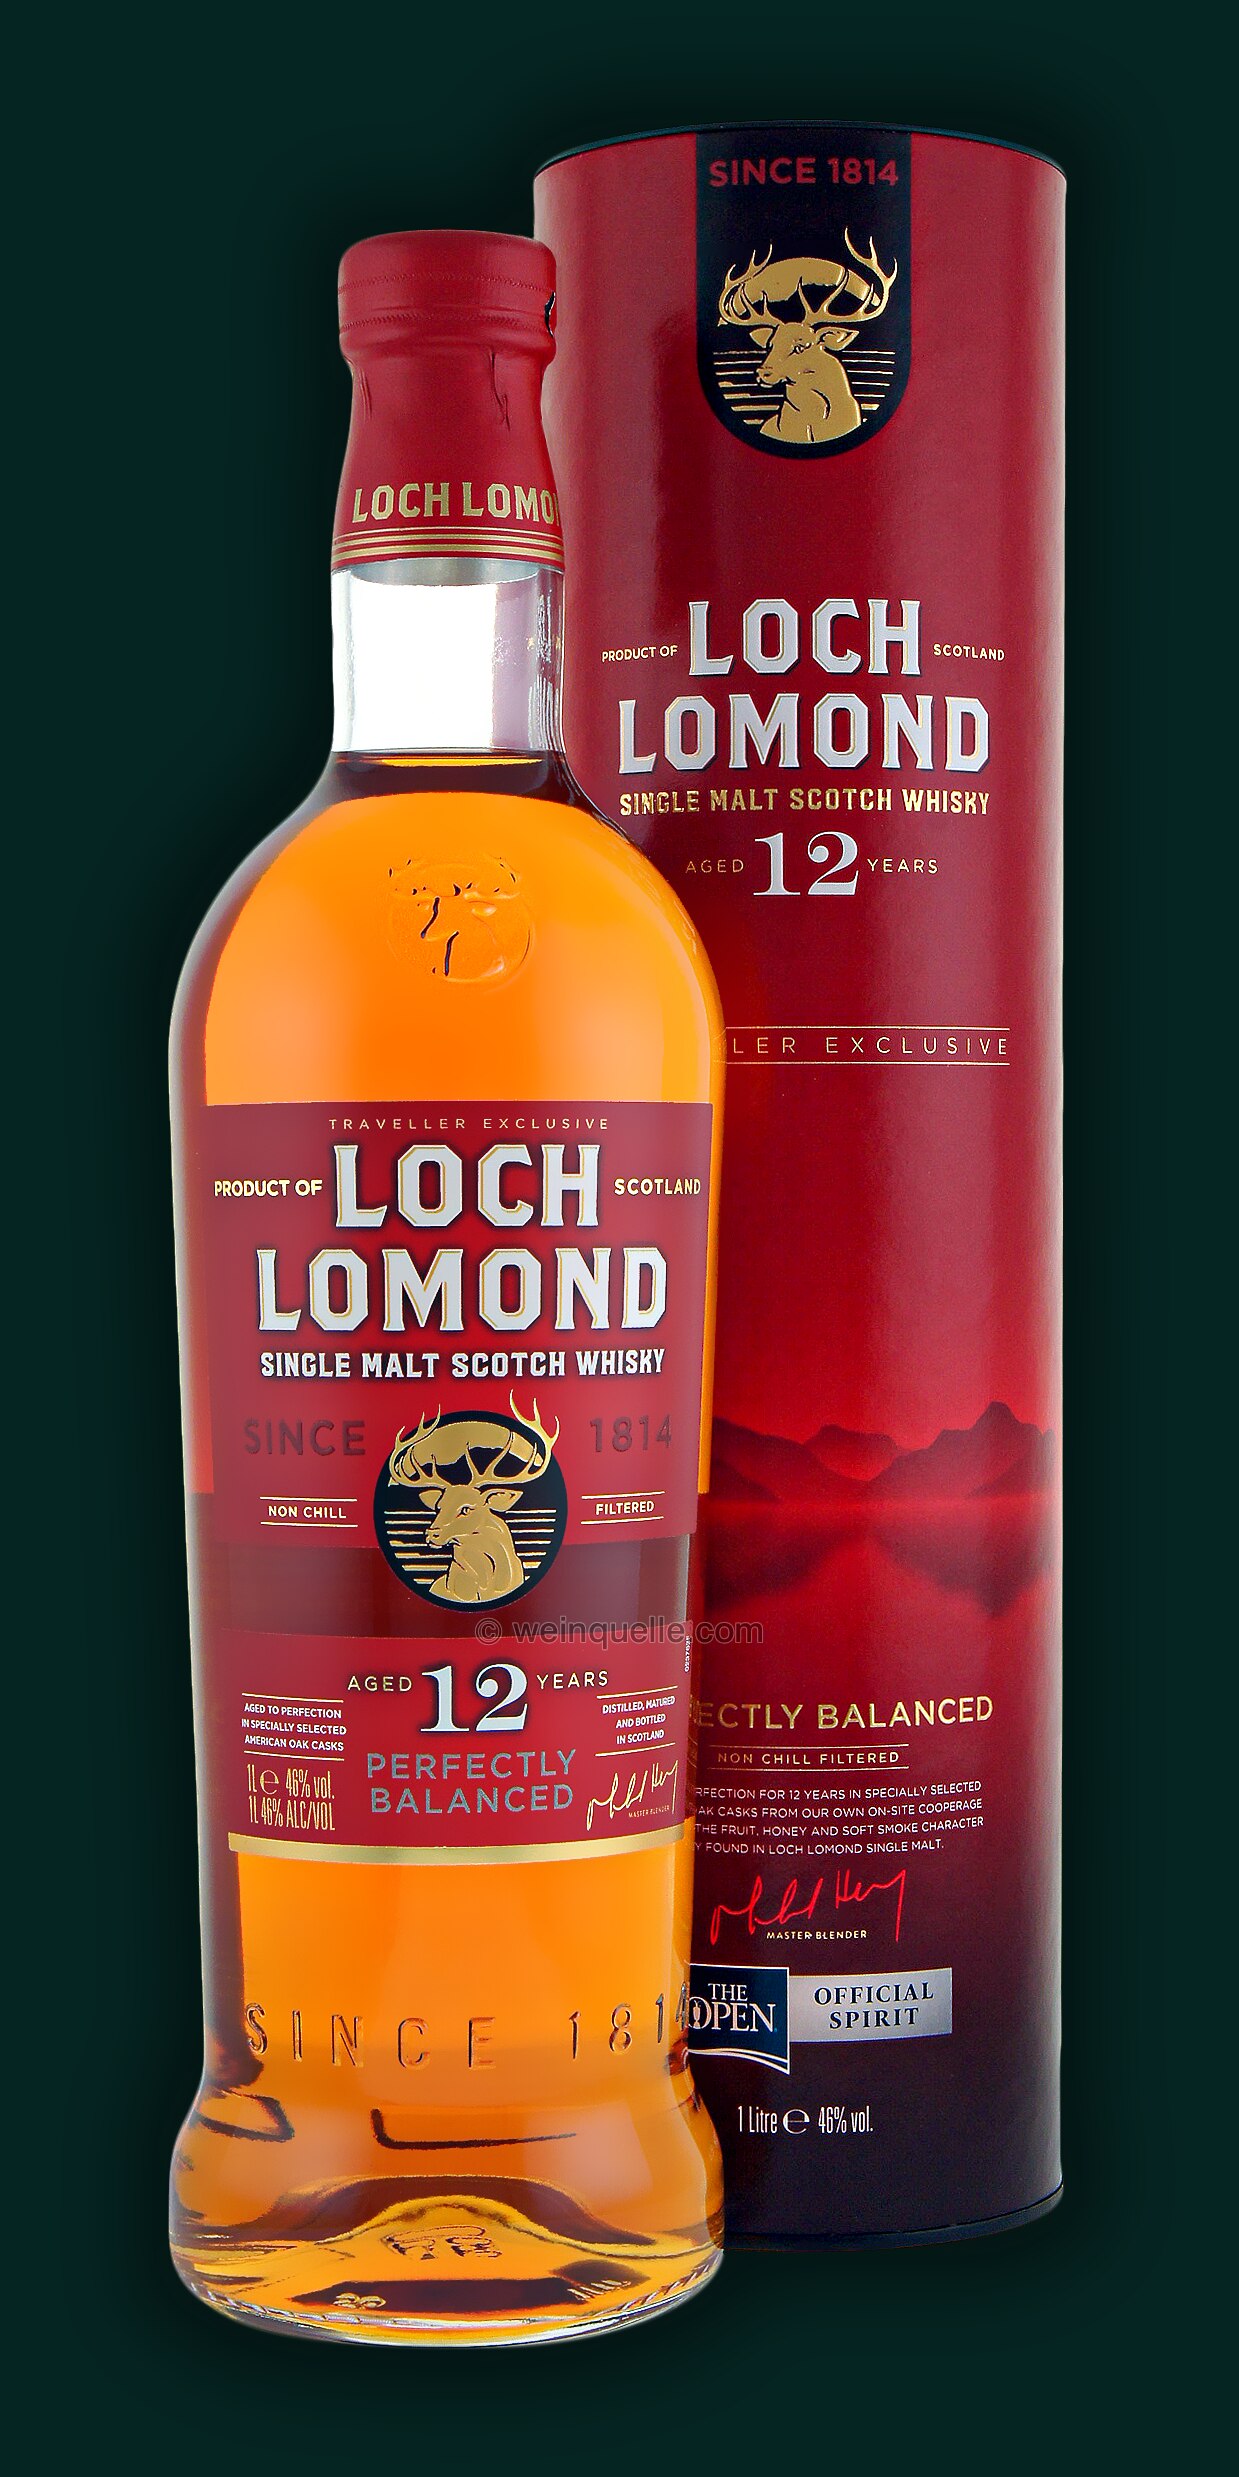 Loch Lomond 12 Years Single Malt - € 46% Weinquelle Lühmann 1,0 49,50 Liter